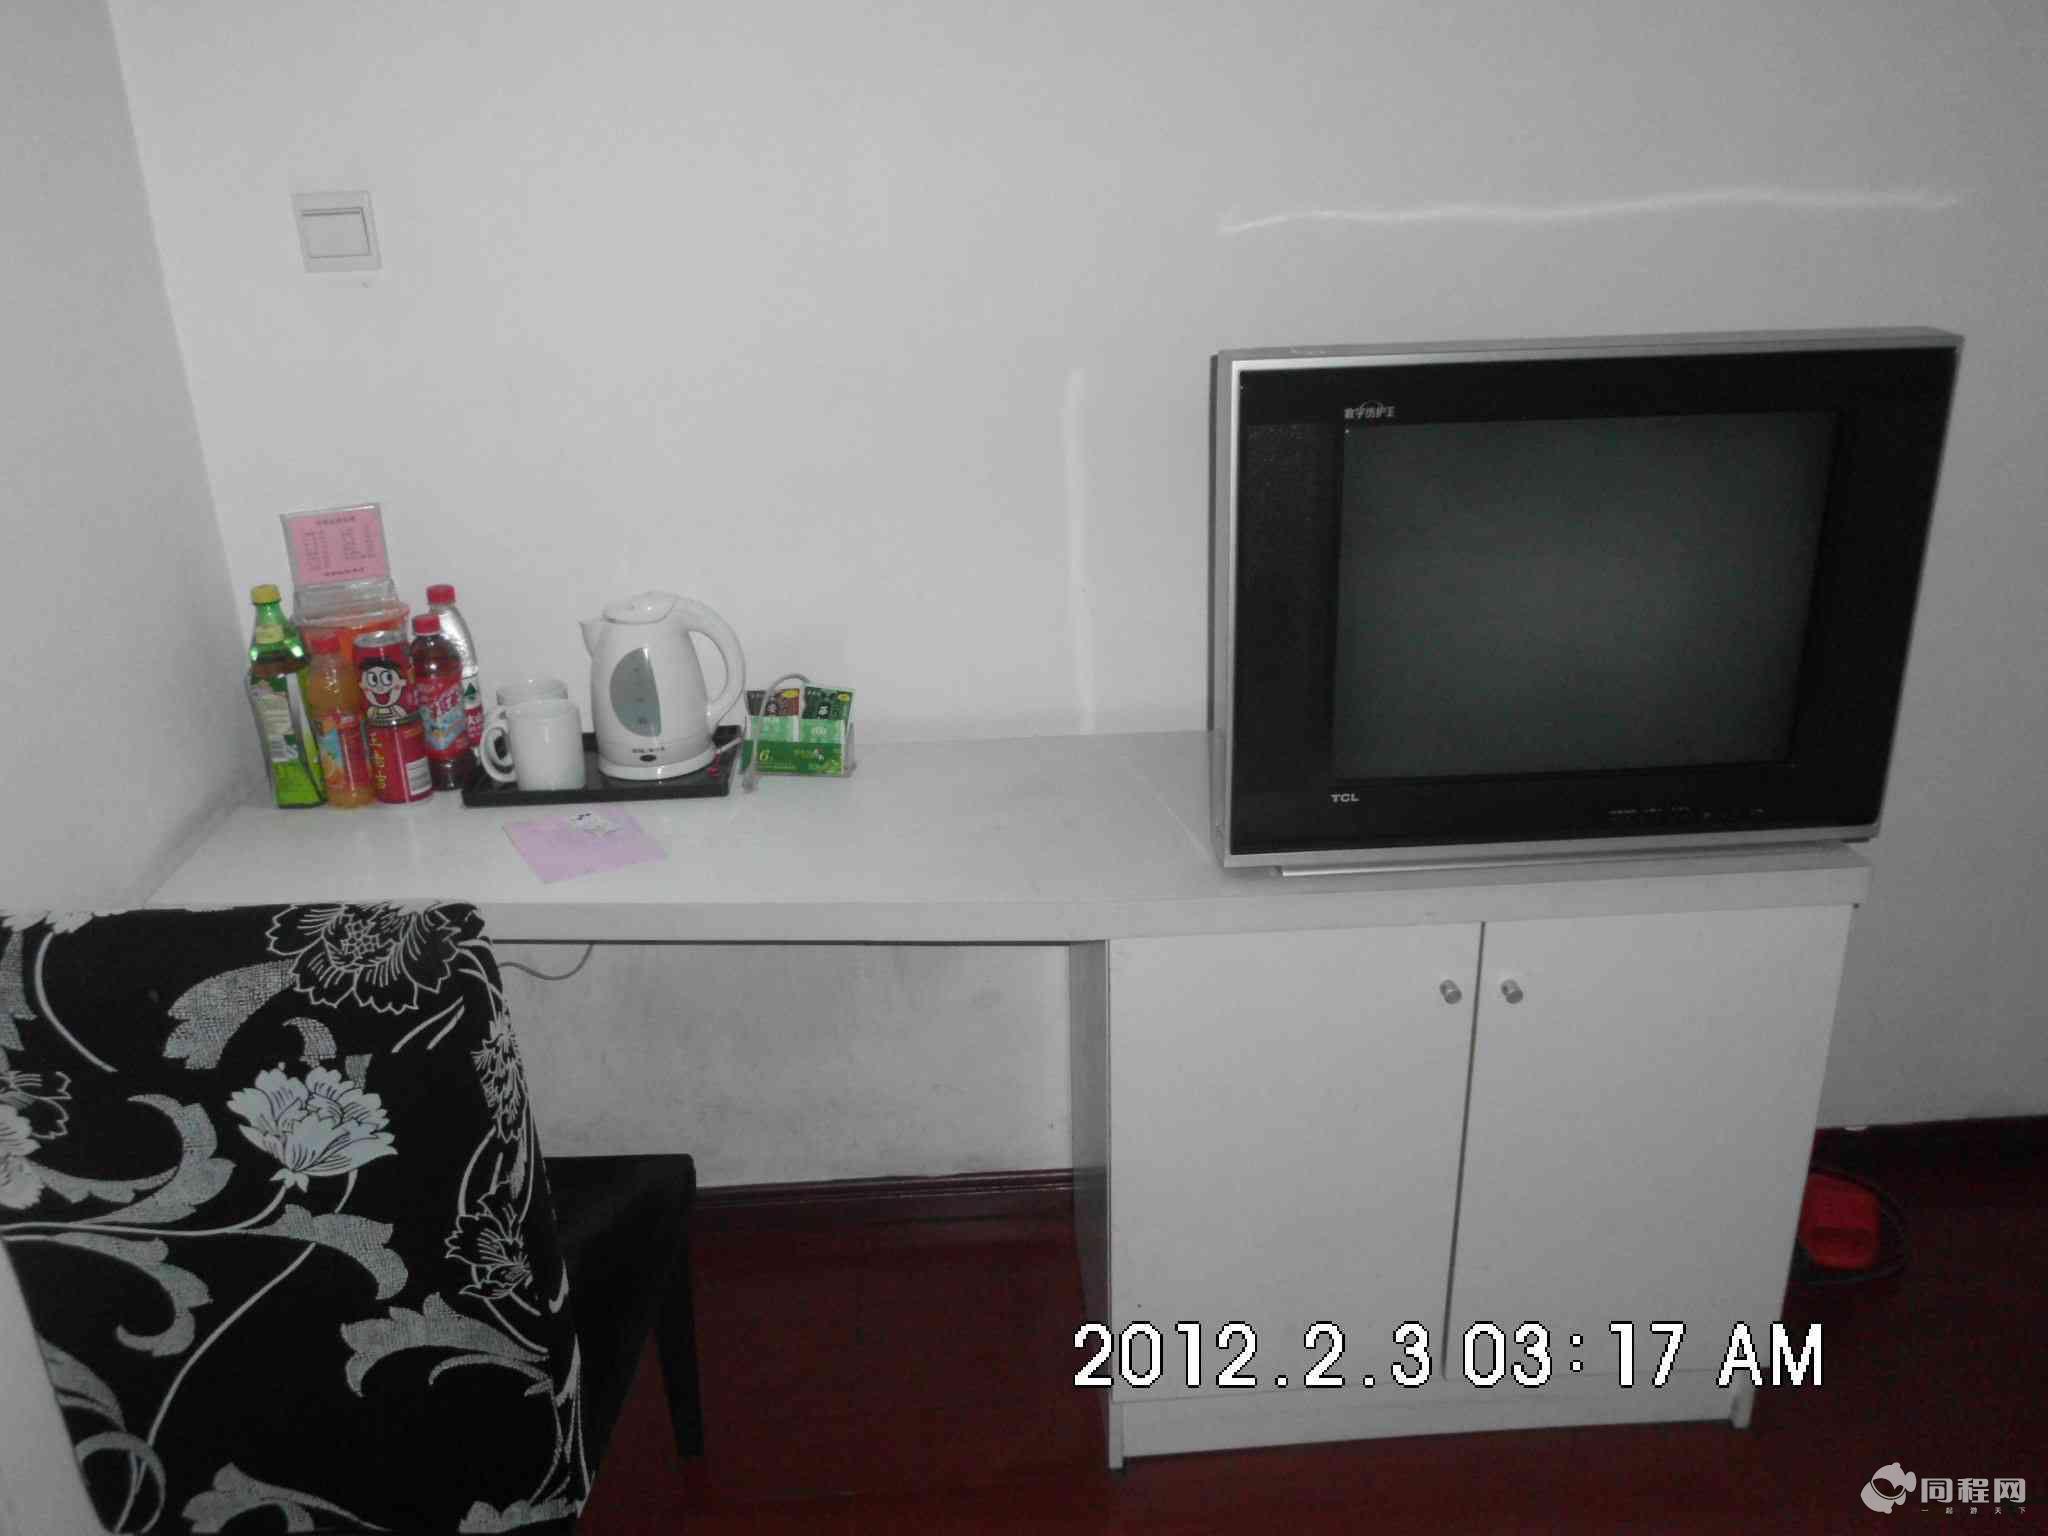 合肥福家快捷酒店（火车站店）图片办公桌及电视[由15095hsyphb提供]